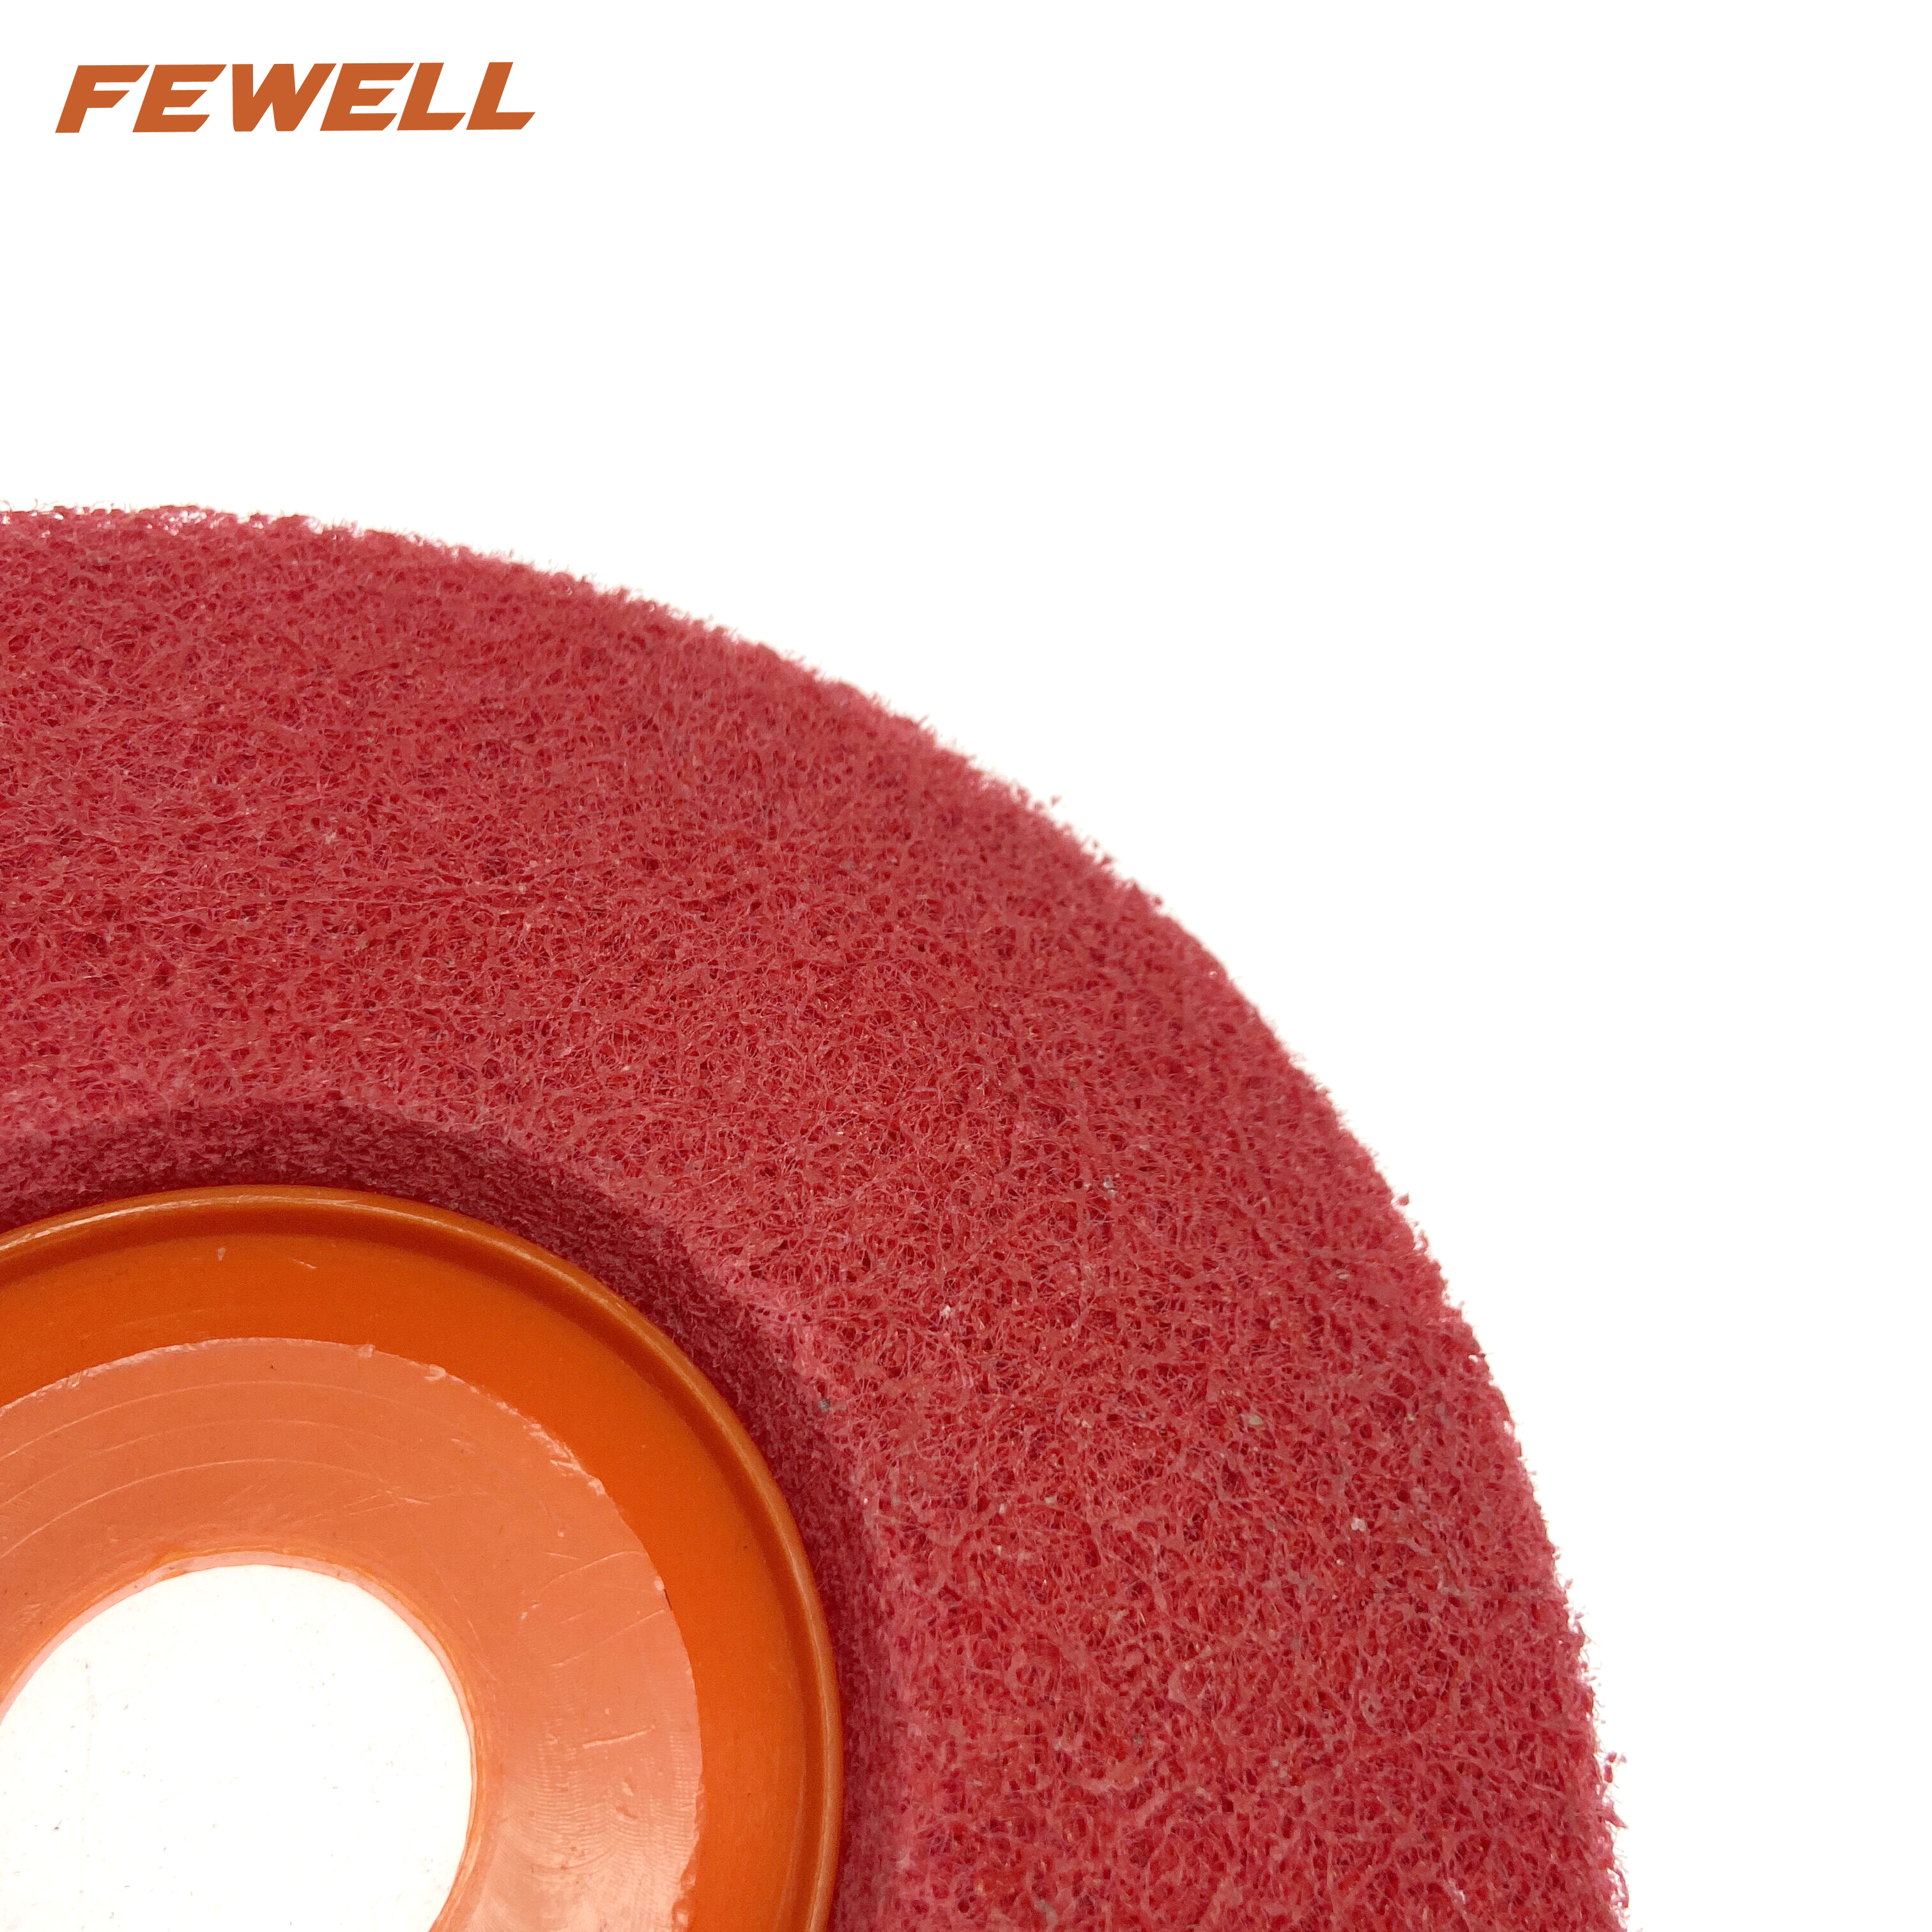 Rueda pulidora abrasiva de nailon rojo de alta calidad, 125x22mm, 5 pulgadas, rueda pulidora de fibra no tejida para pulir acero inoxidable